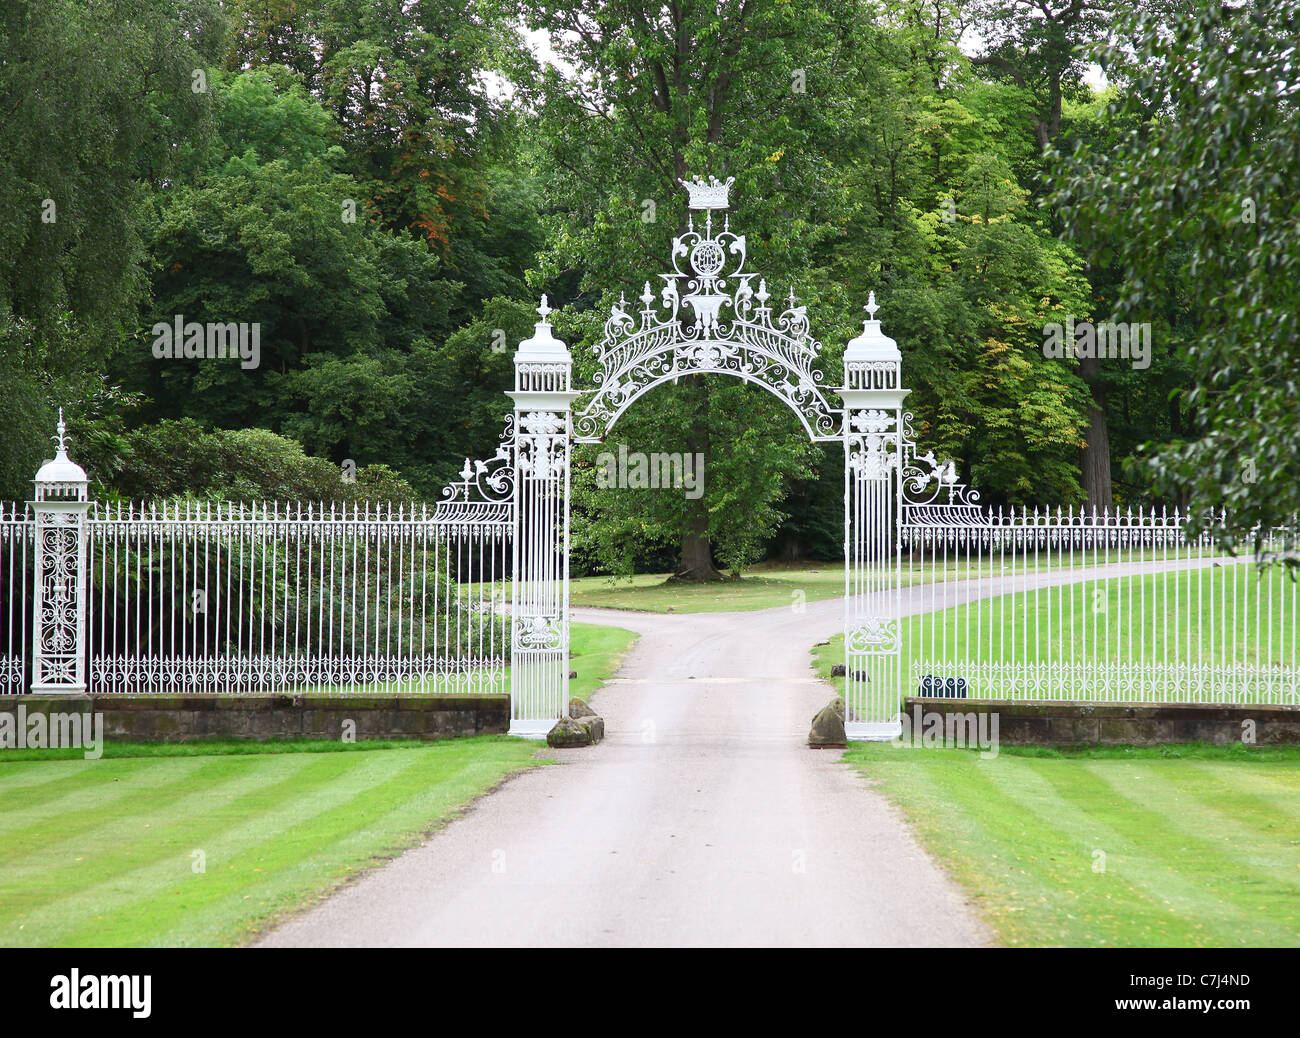 Porte ornate a Cholmondeley Castle Cheshire, Inghilterra, Regno Unito Foto Stock